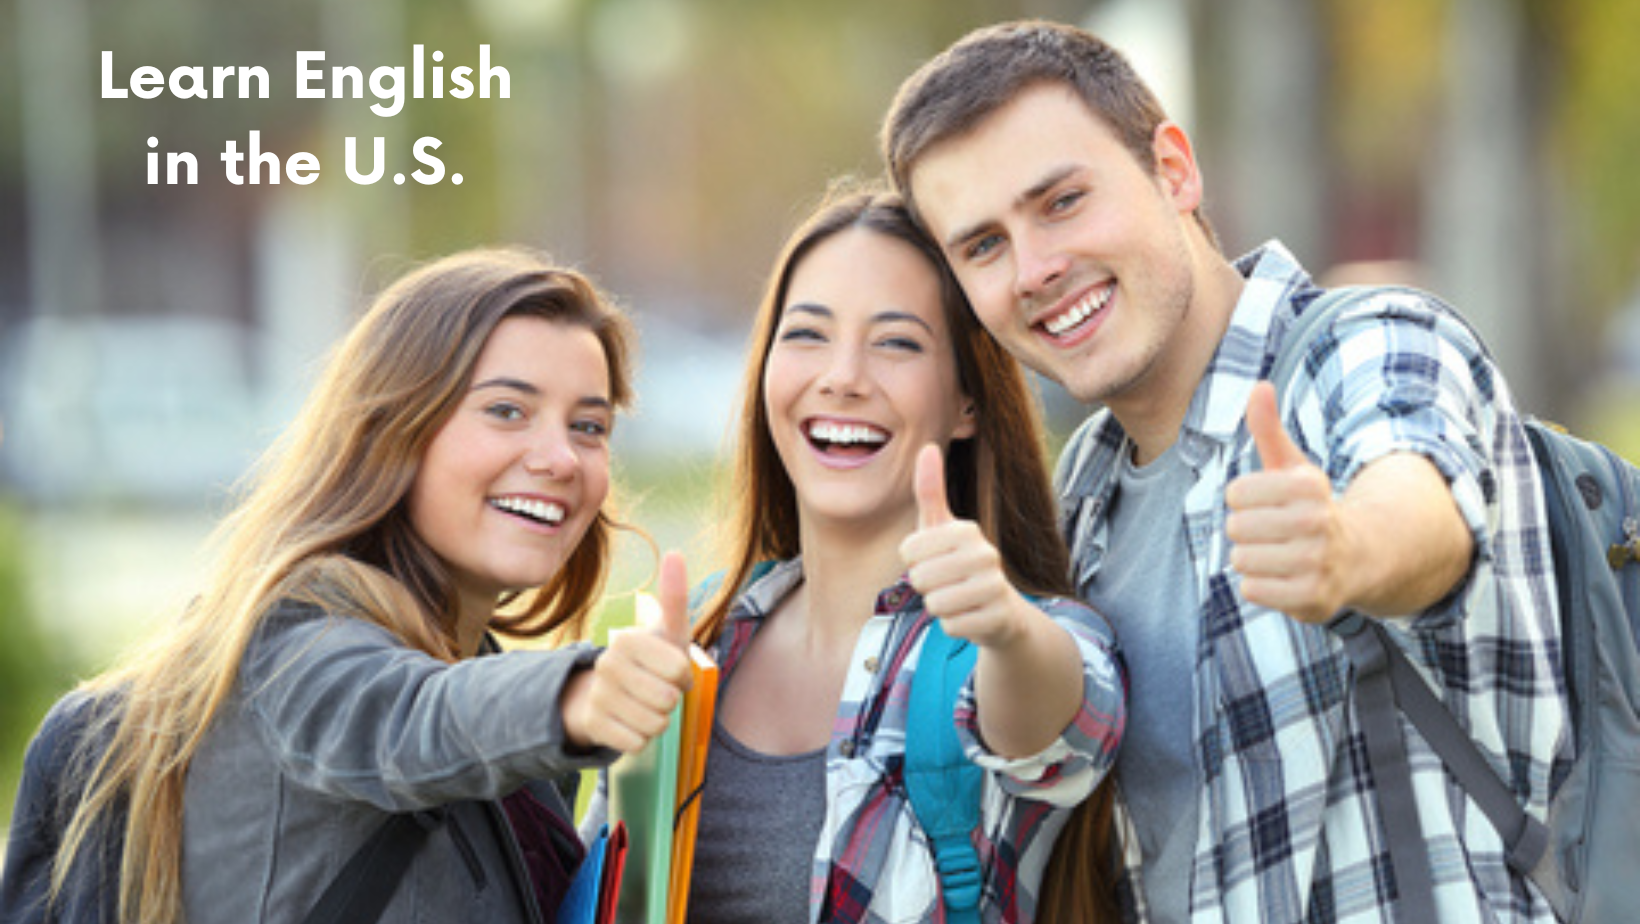 Analiza i ocena programów i kursów angielskiego w USA.